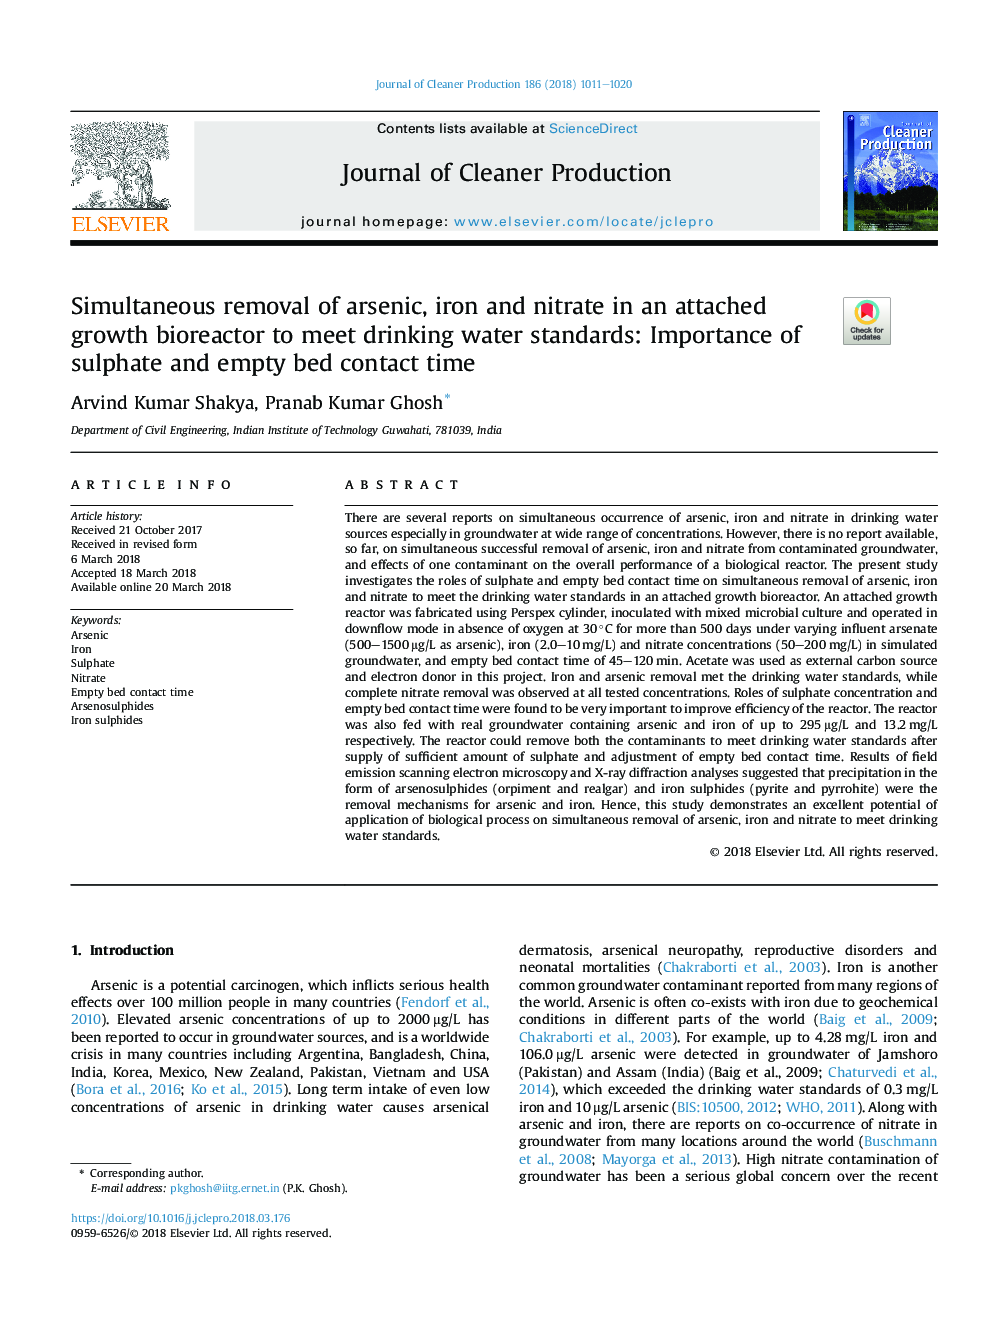 همزمان حذف آرسنیک، آهن و نیترات در یک بیوراکتور رشد متصل به استانداردهای آب آشامیدنی: اهمیت زمان تماس با سولفات و خالص 